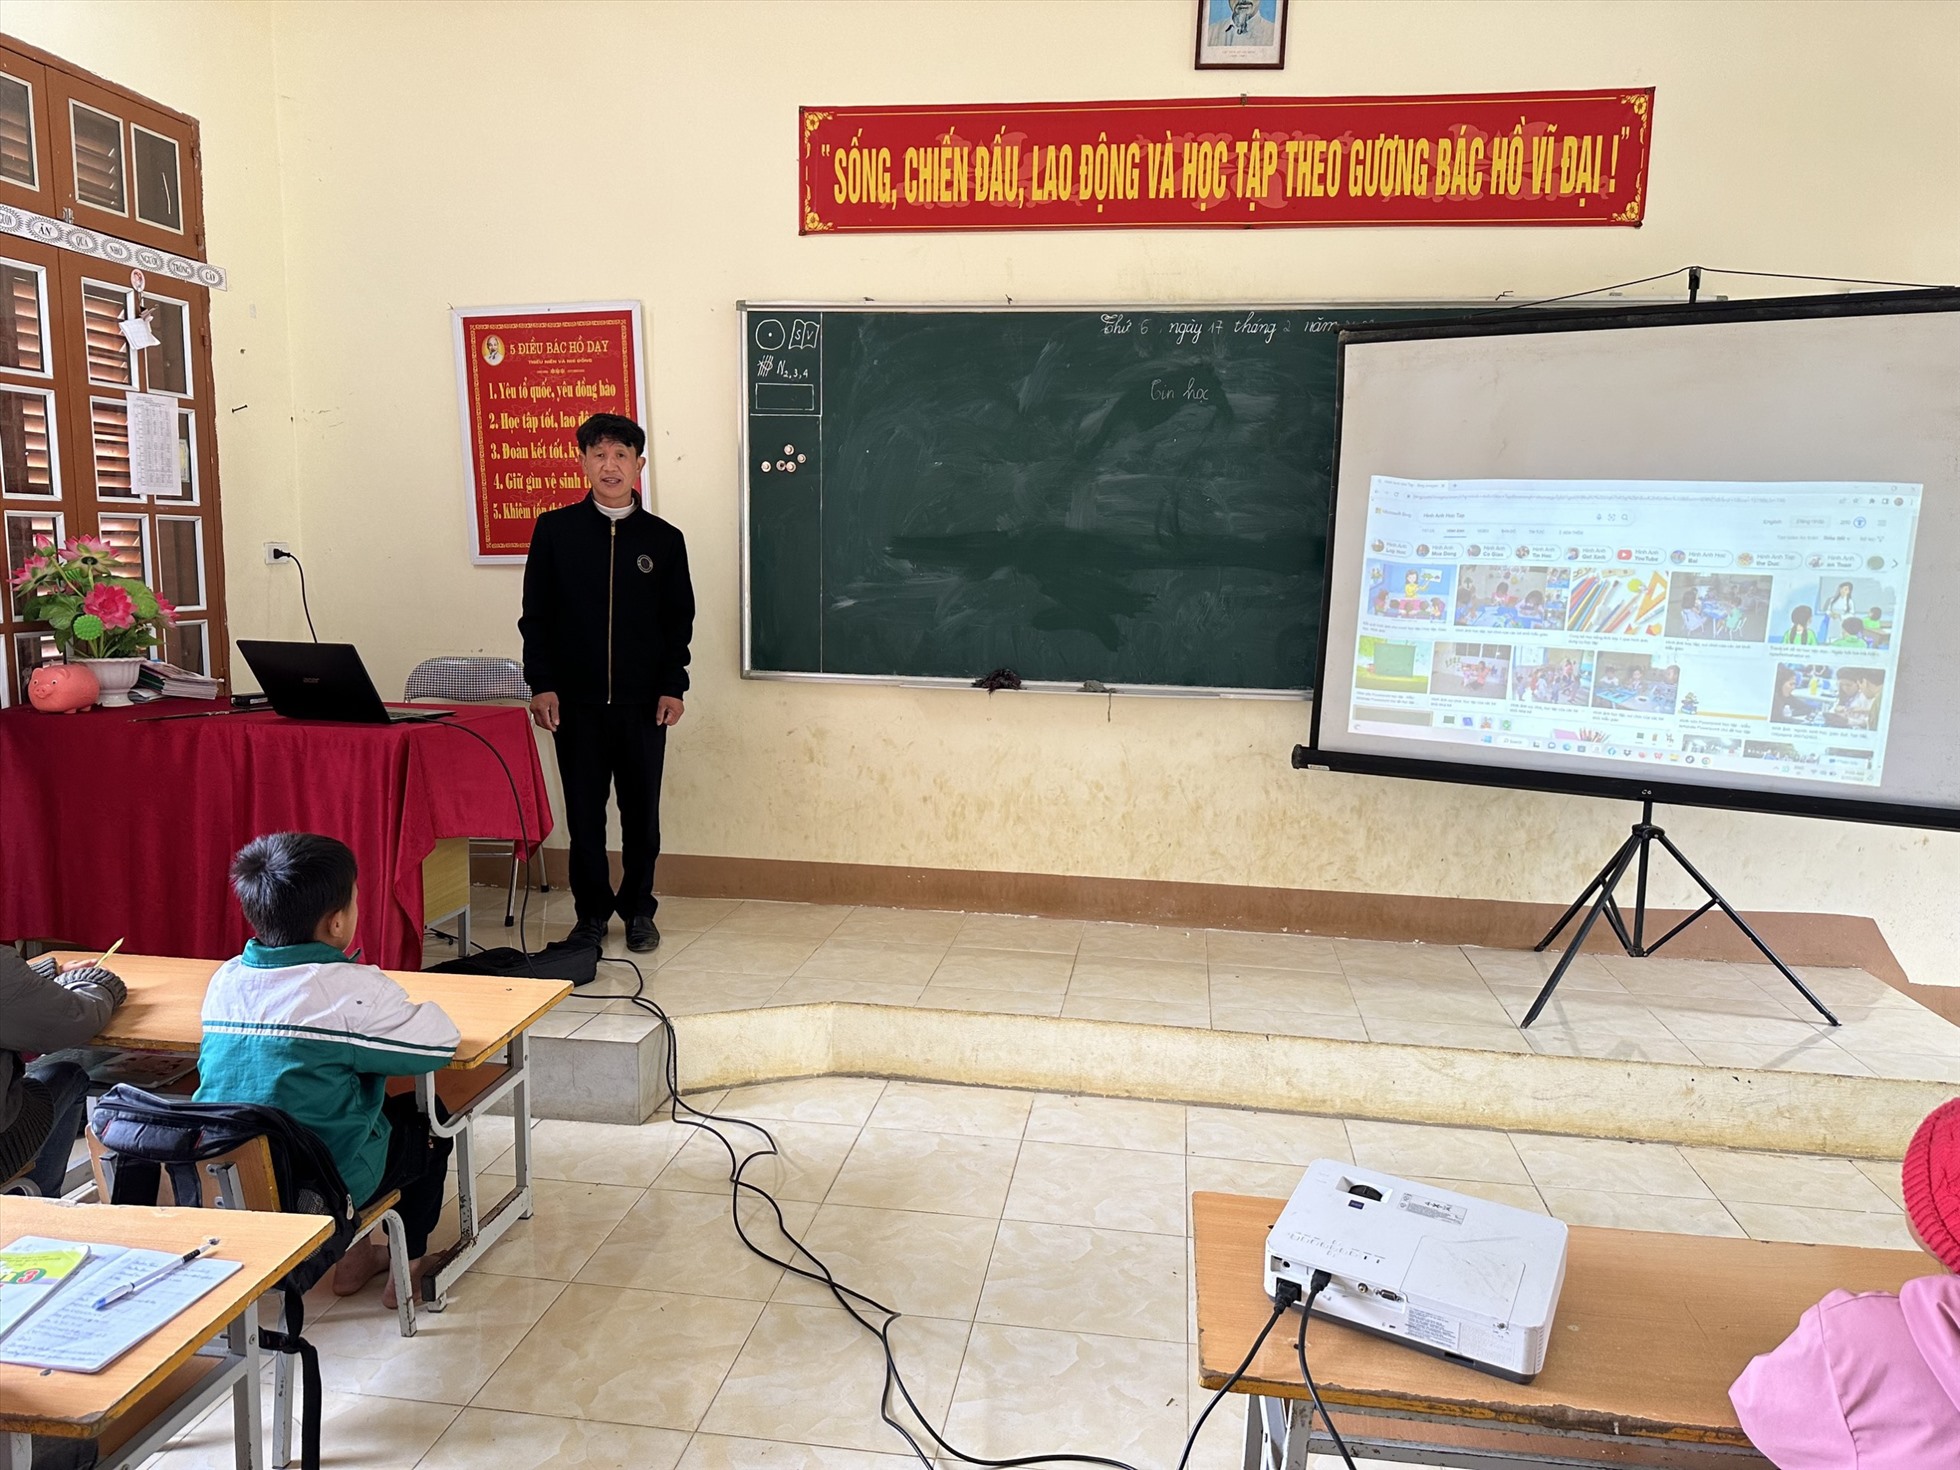 Tại trường Tiểu học Lóng Luông (Vân Hồ) chỉ có duy nhất thầy giáo dạy môn Tin học cho 7 điểm trường. Ảnh: Nhà trường cung cấp